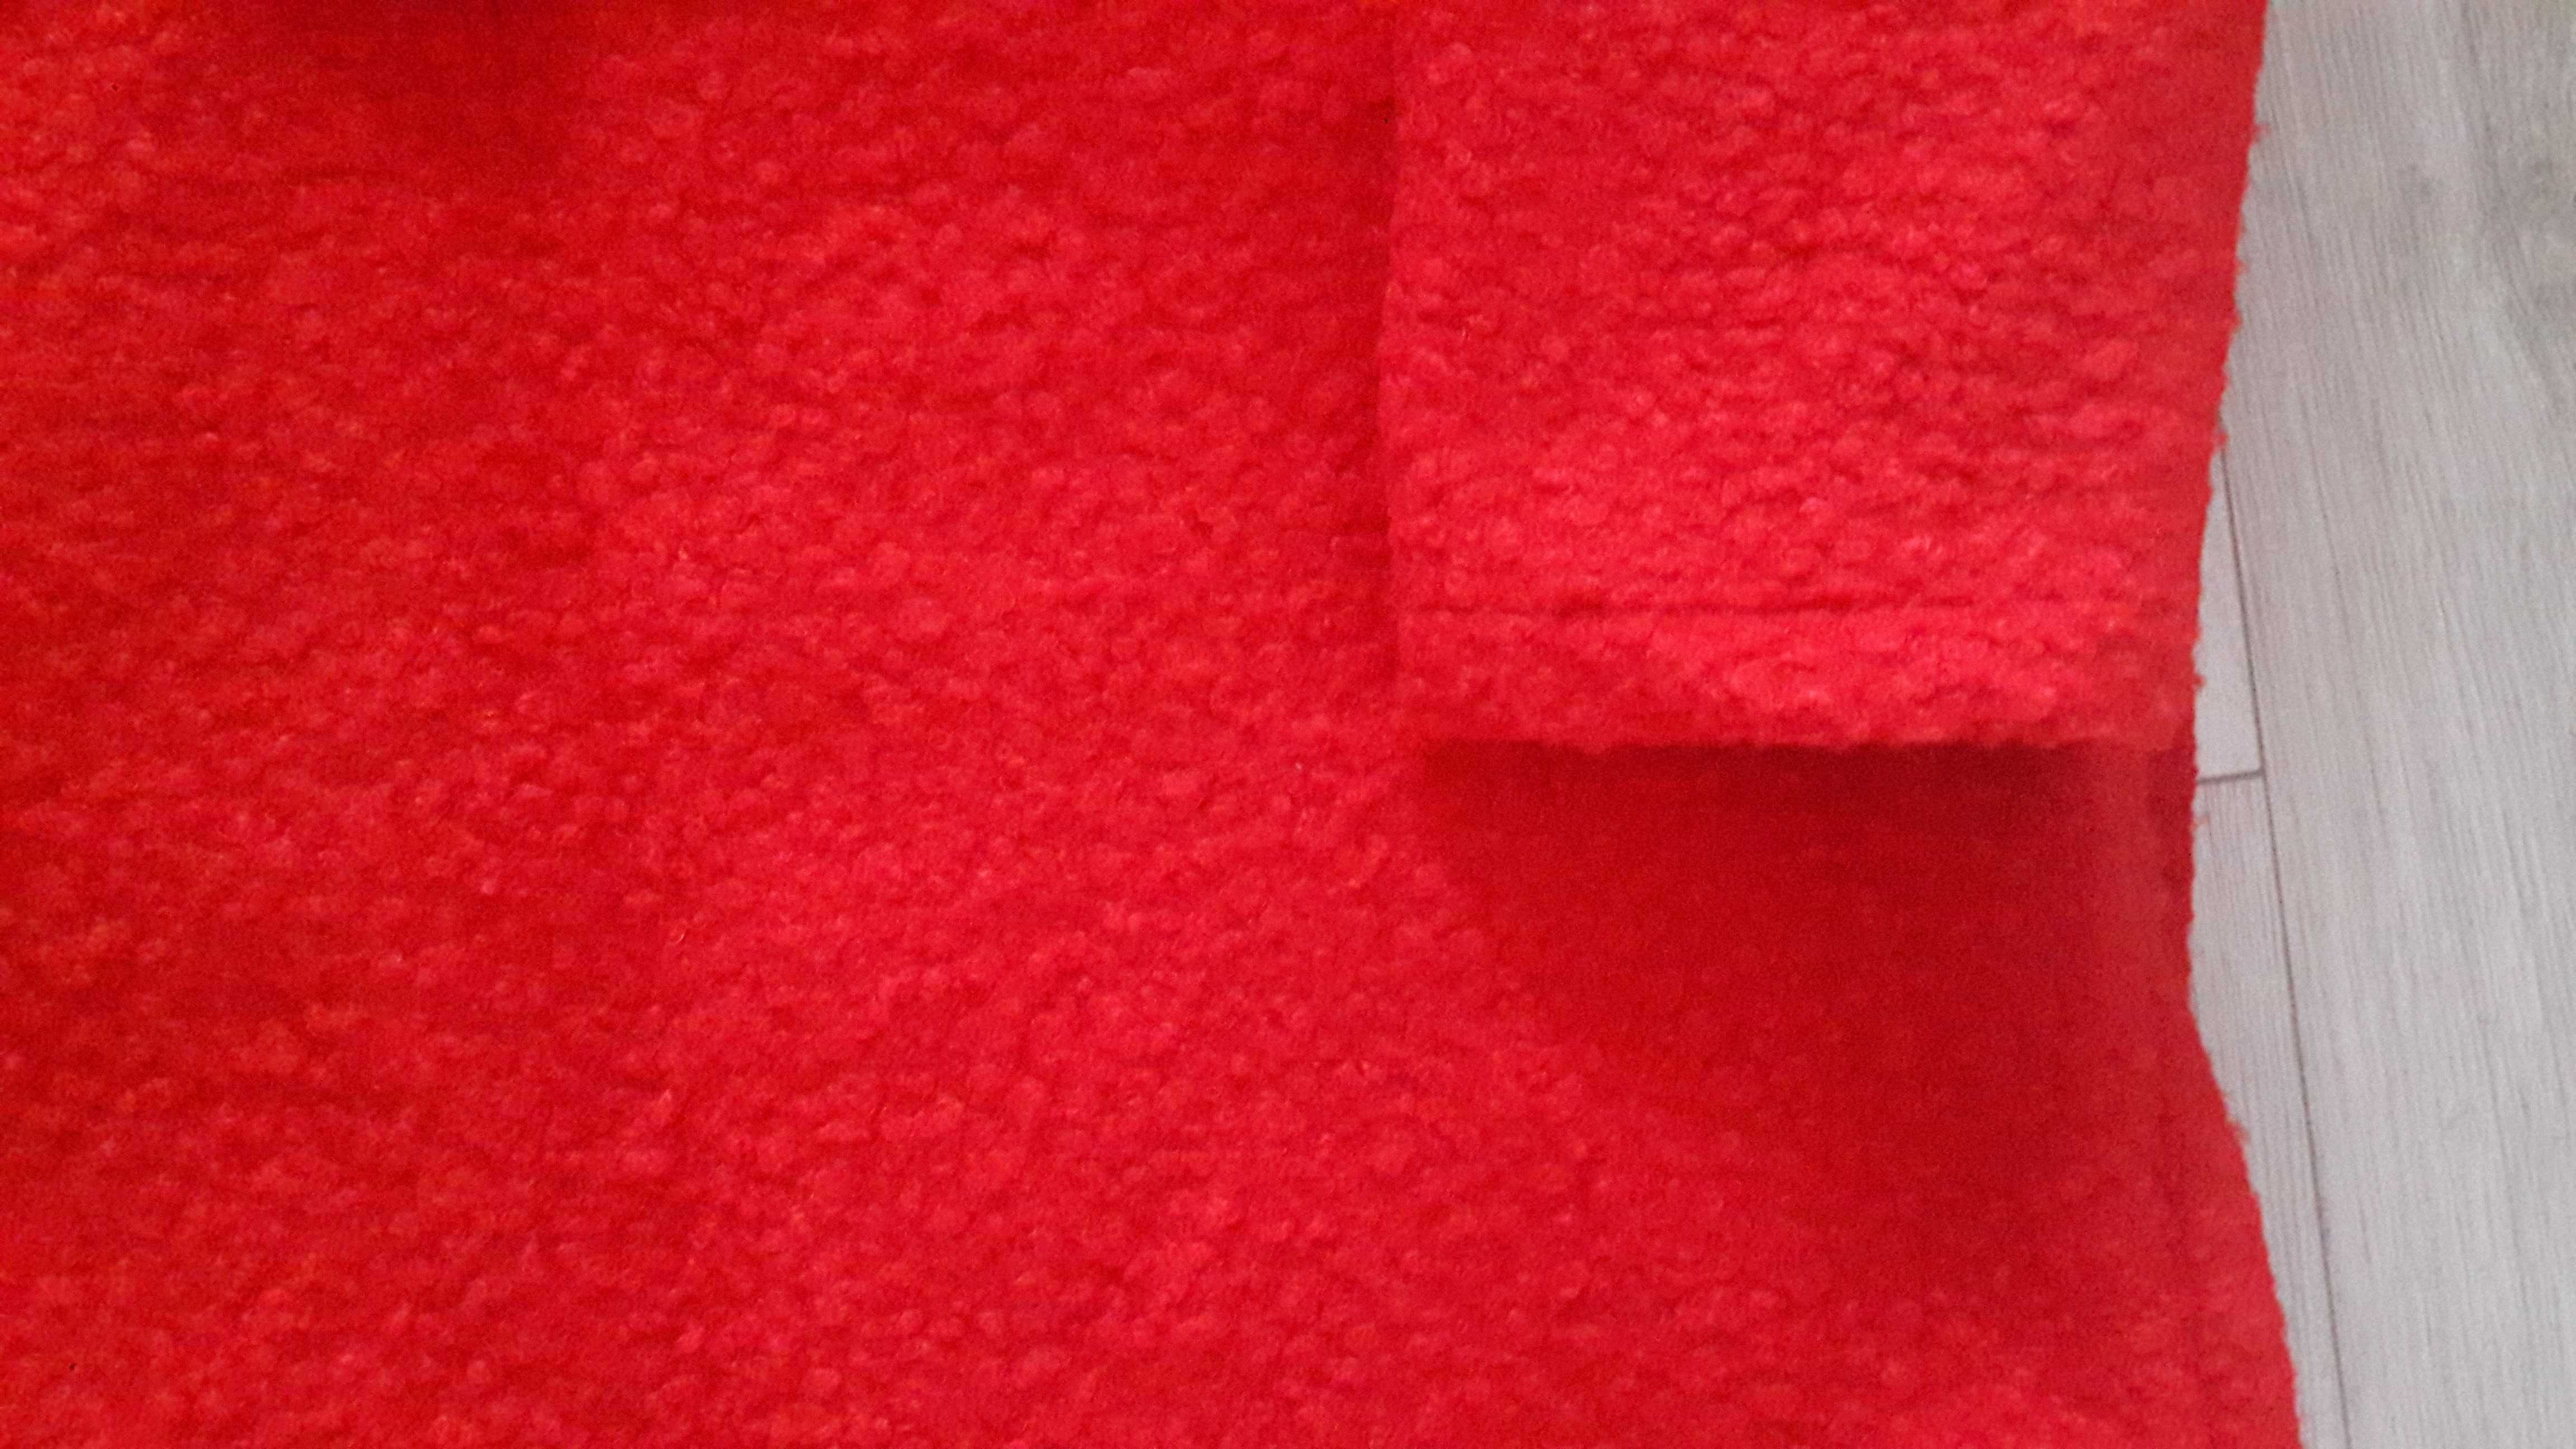 Płaszcz nowy czerwony bukle, r. L/XL